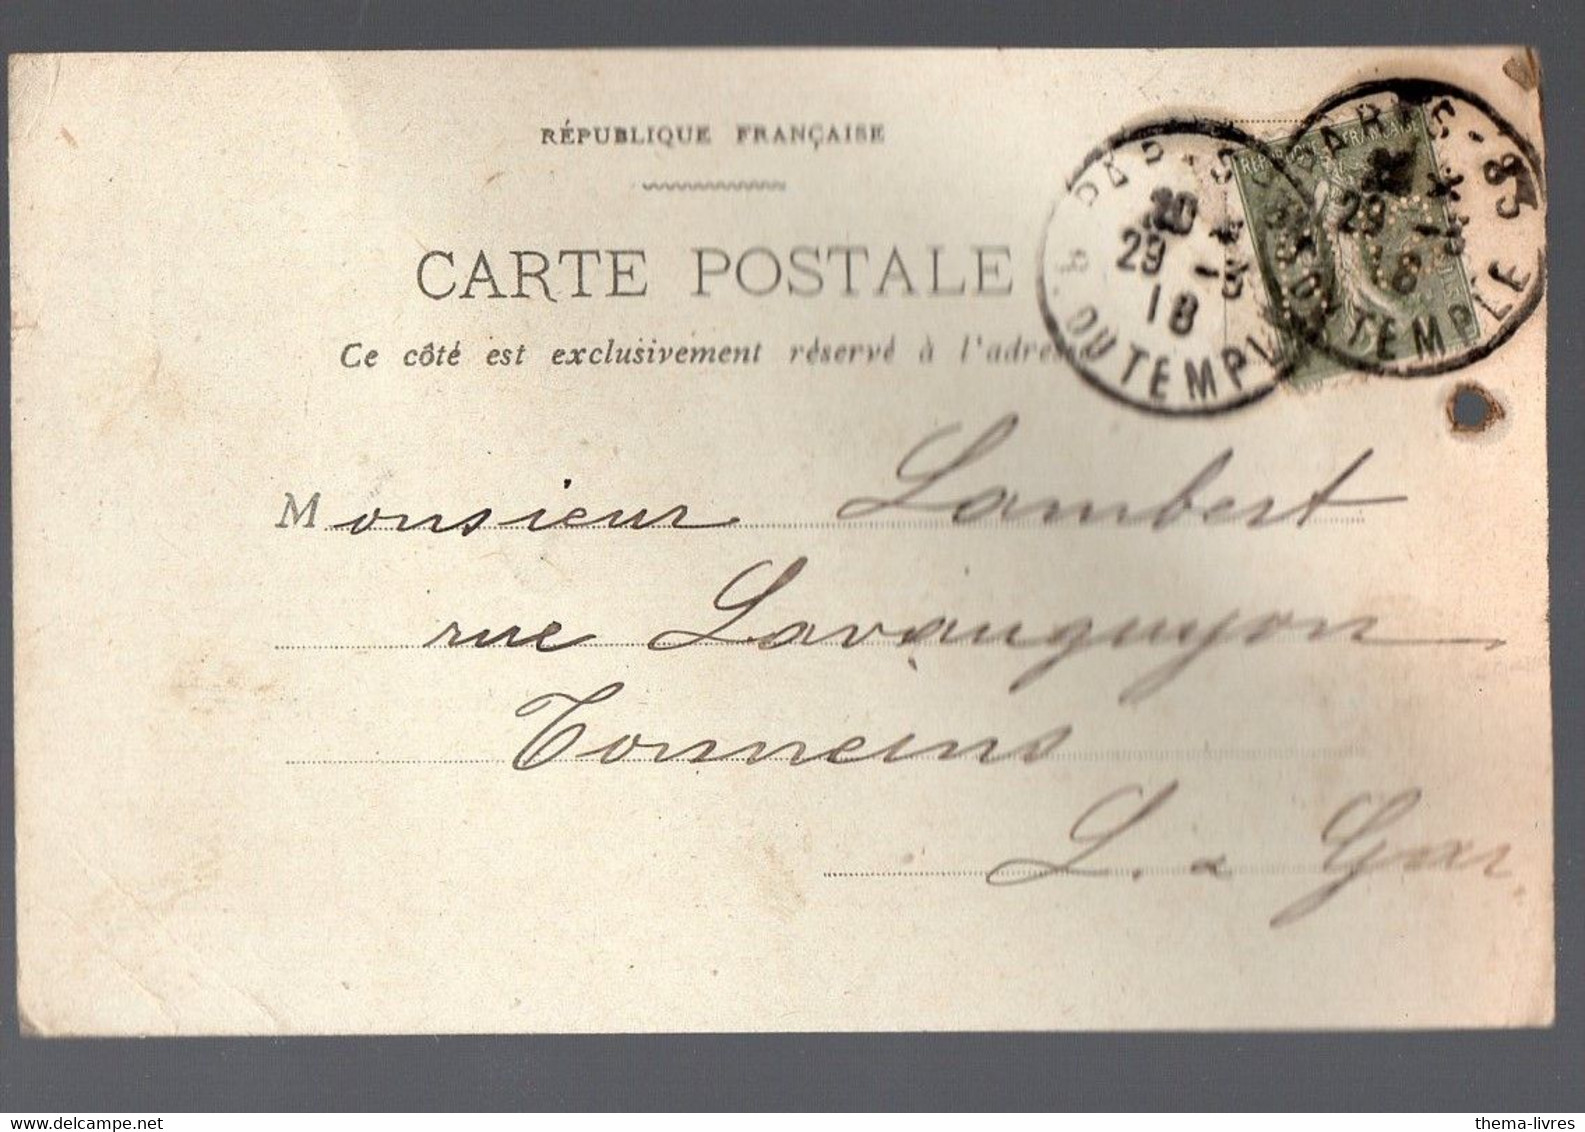 Paris Carte De Correspondance Commerciale  SIEGEL ET AUGUSTIN (gainerie) Avec Timbre Perforé VNS 1918 (PPP38298) - Storia Postale